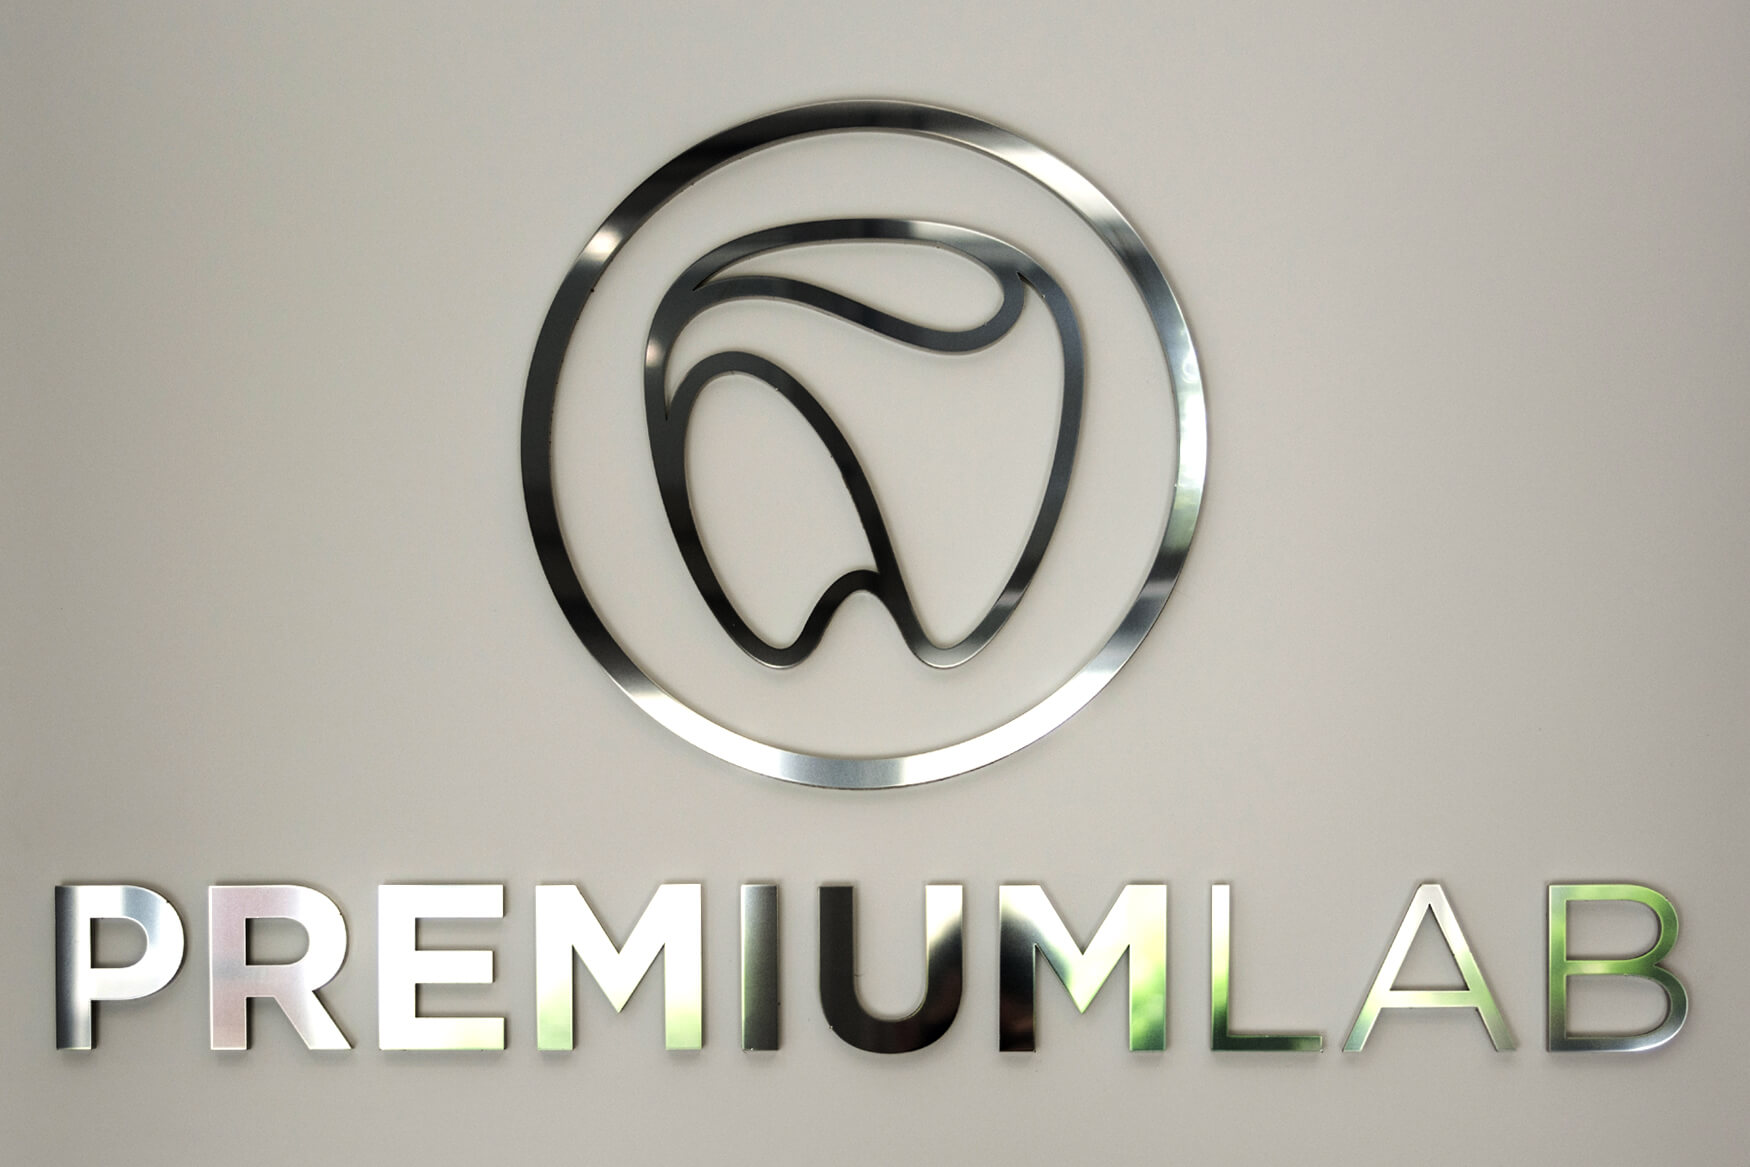 Premiumlab - Premiumlab - logo i litery przestrzenne 3D wykonane z plexi i blachy nierdzewnej polerowanej umieszczone w holu